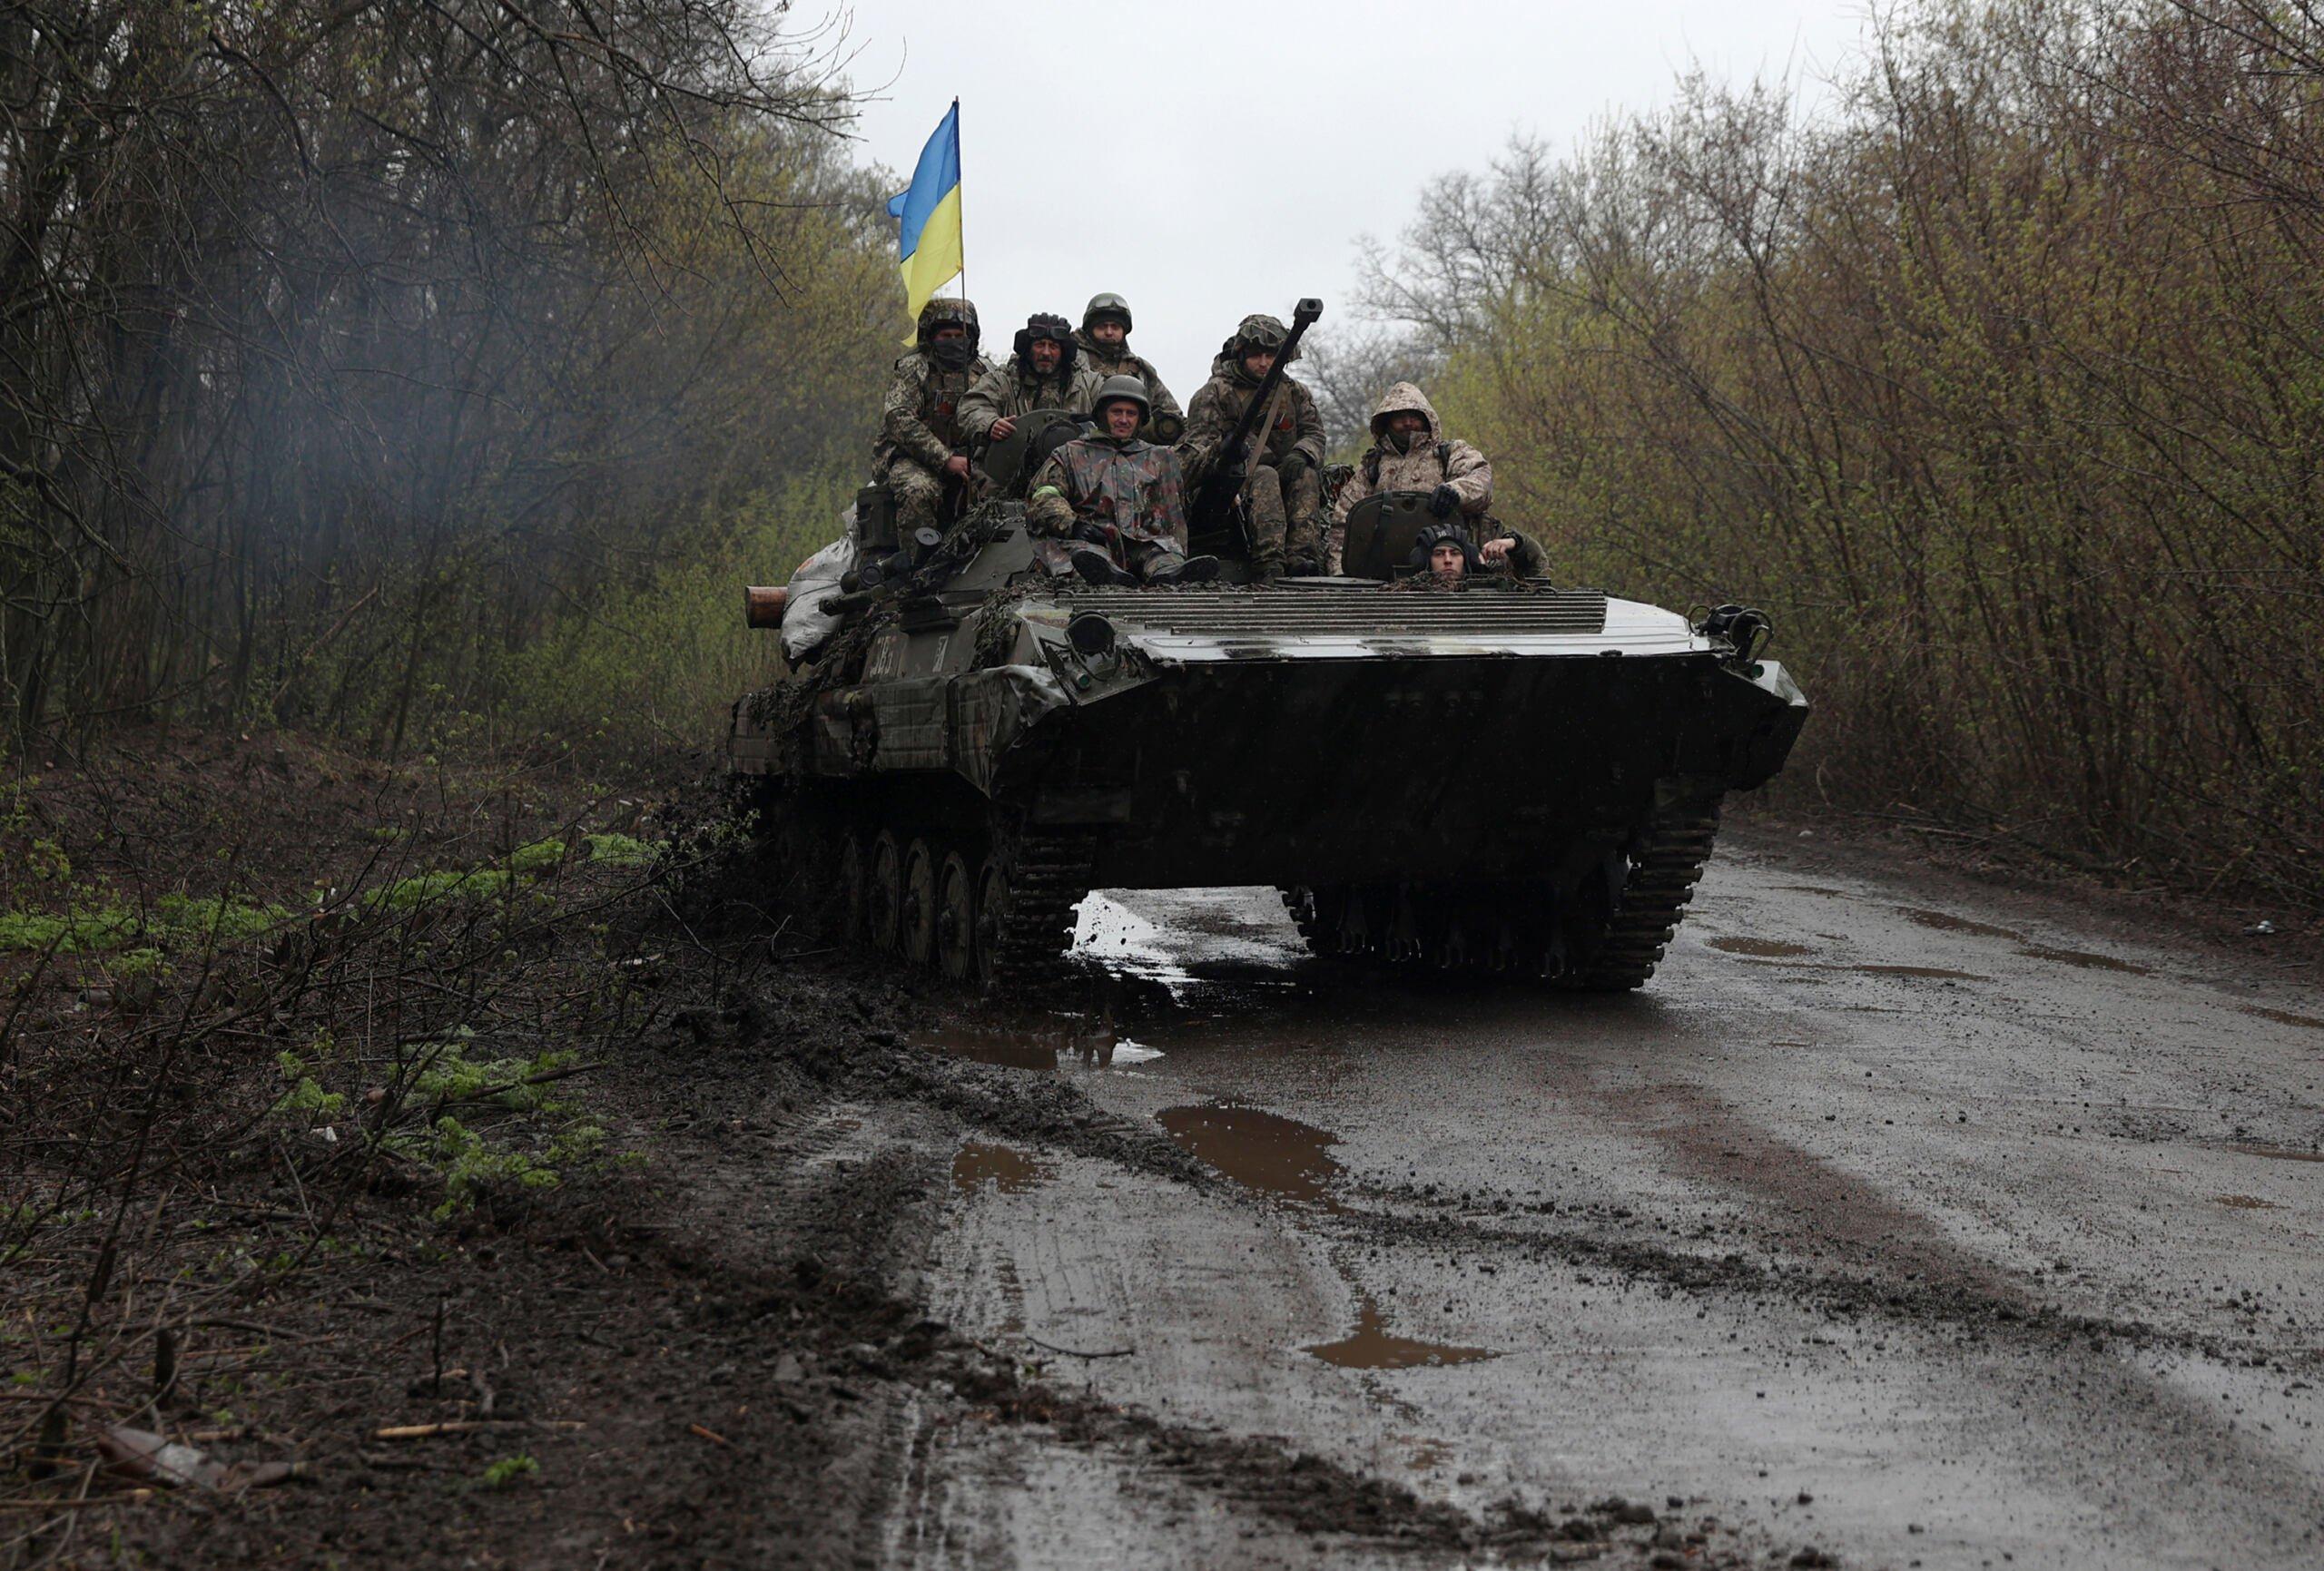 Żołnierze jadą na transporterze opancerzonym z ukraińską flagą